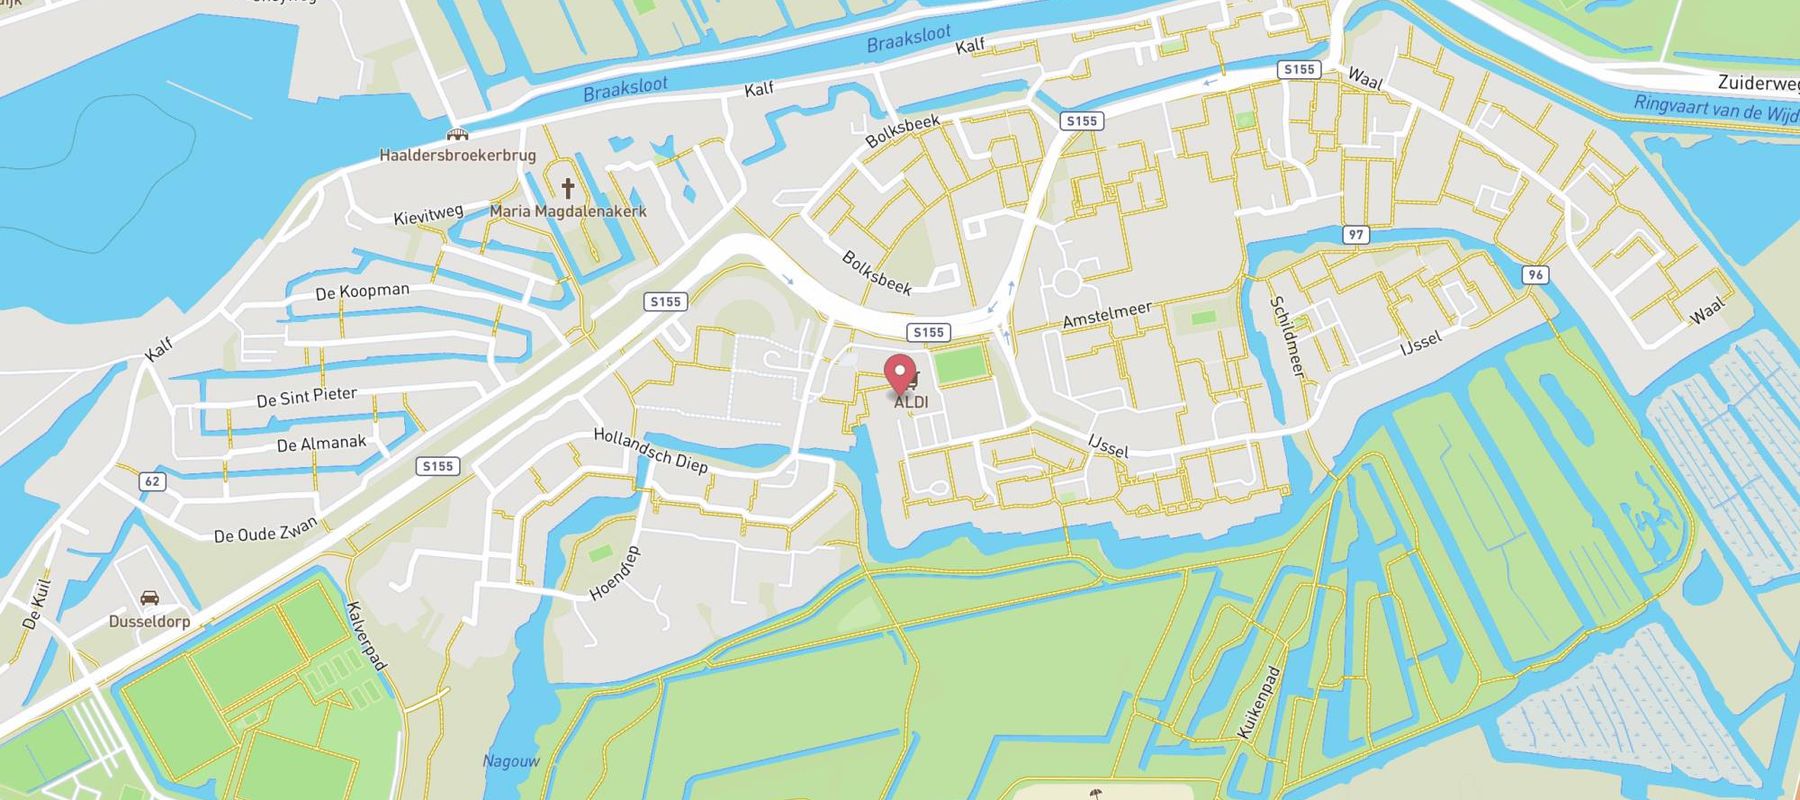 DekaMarkt Zaandam map